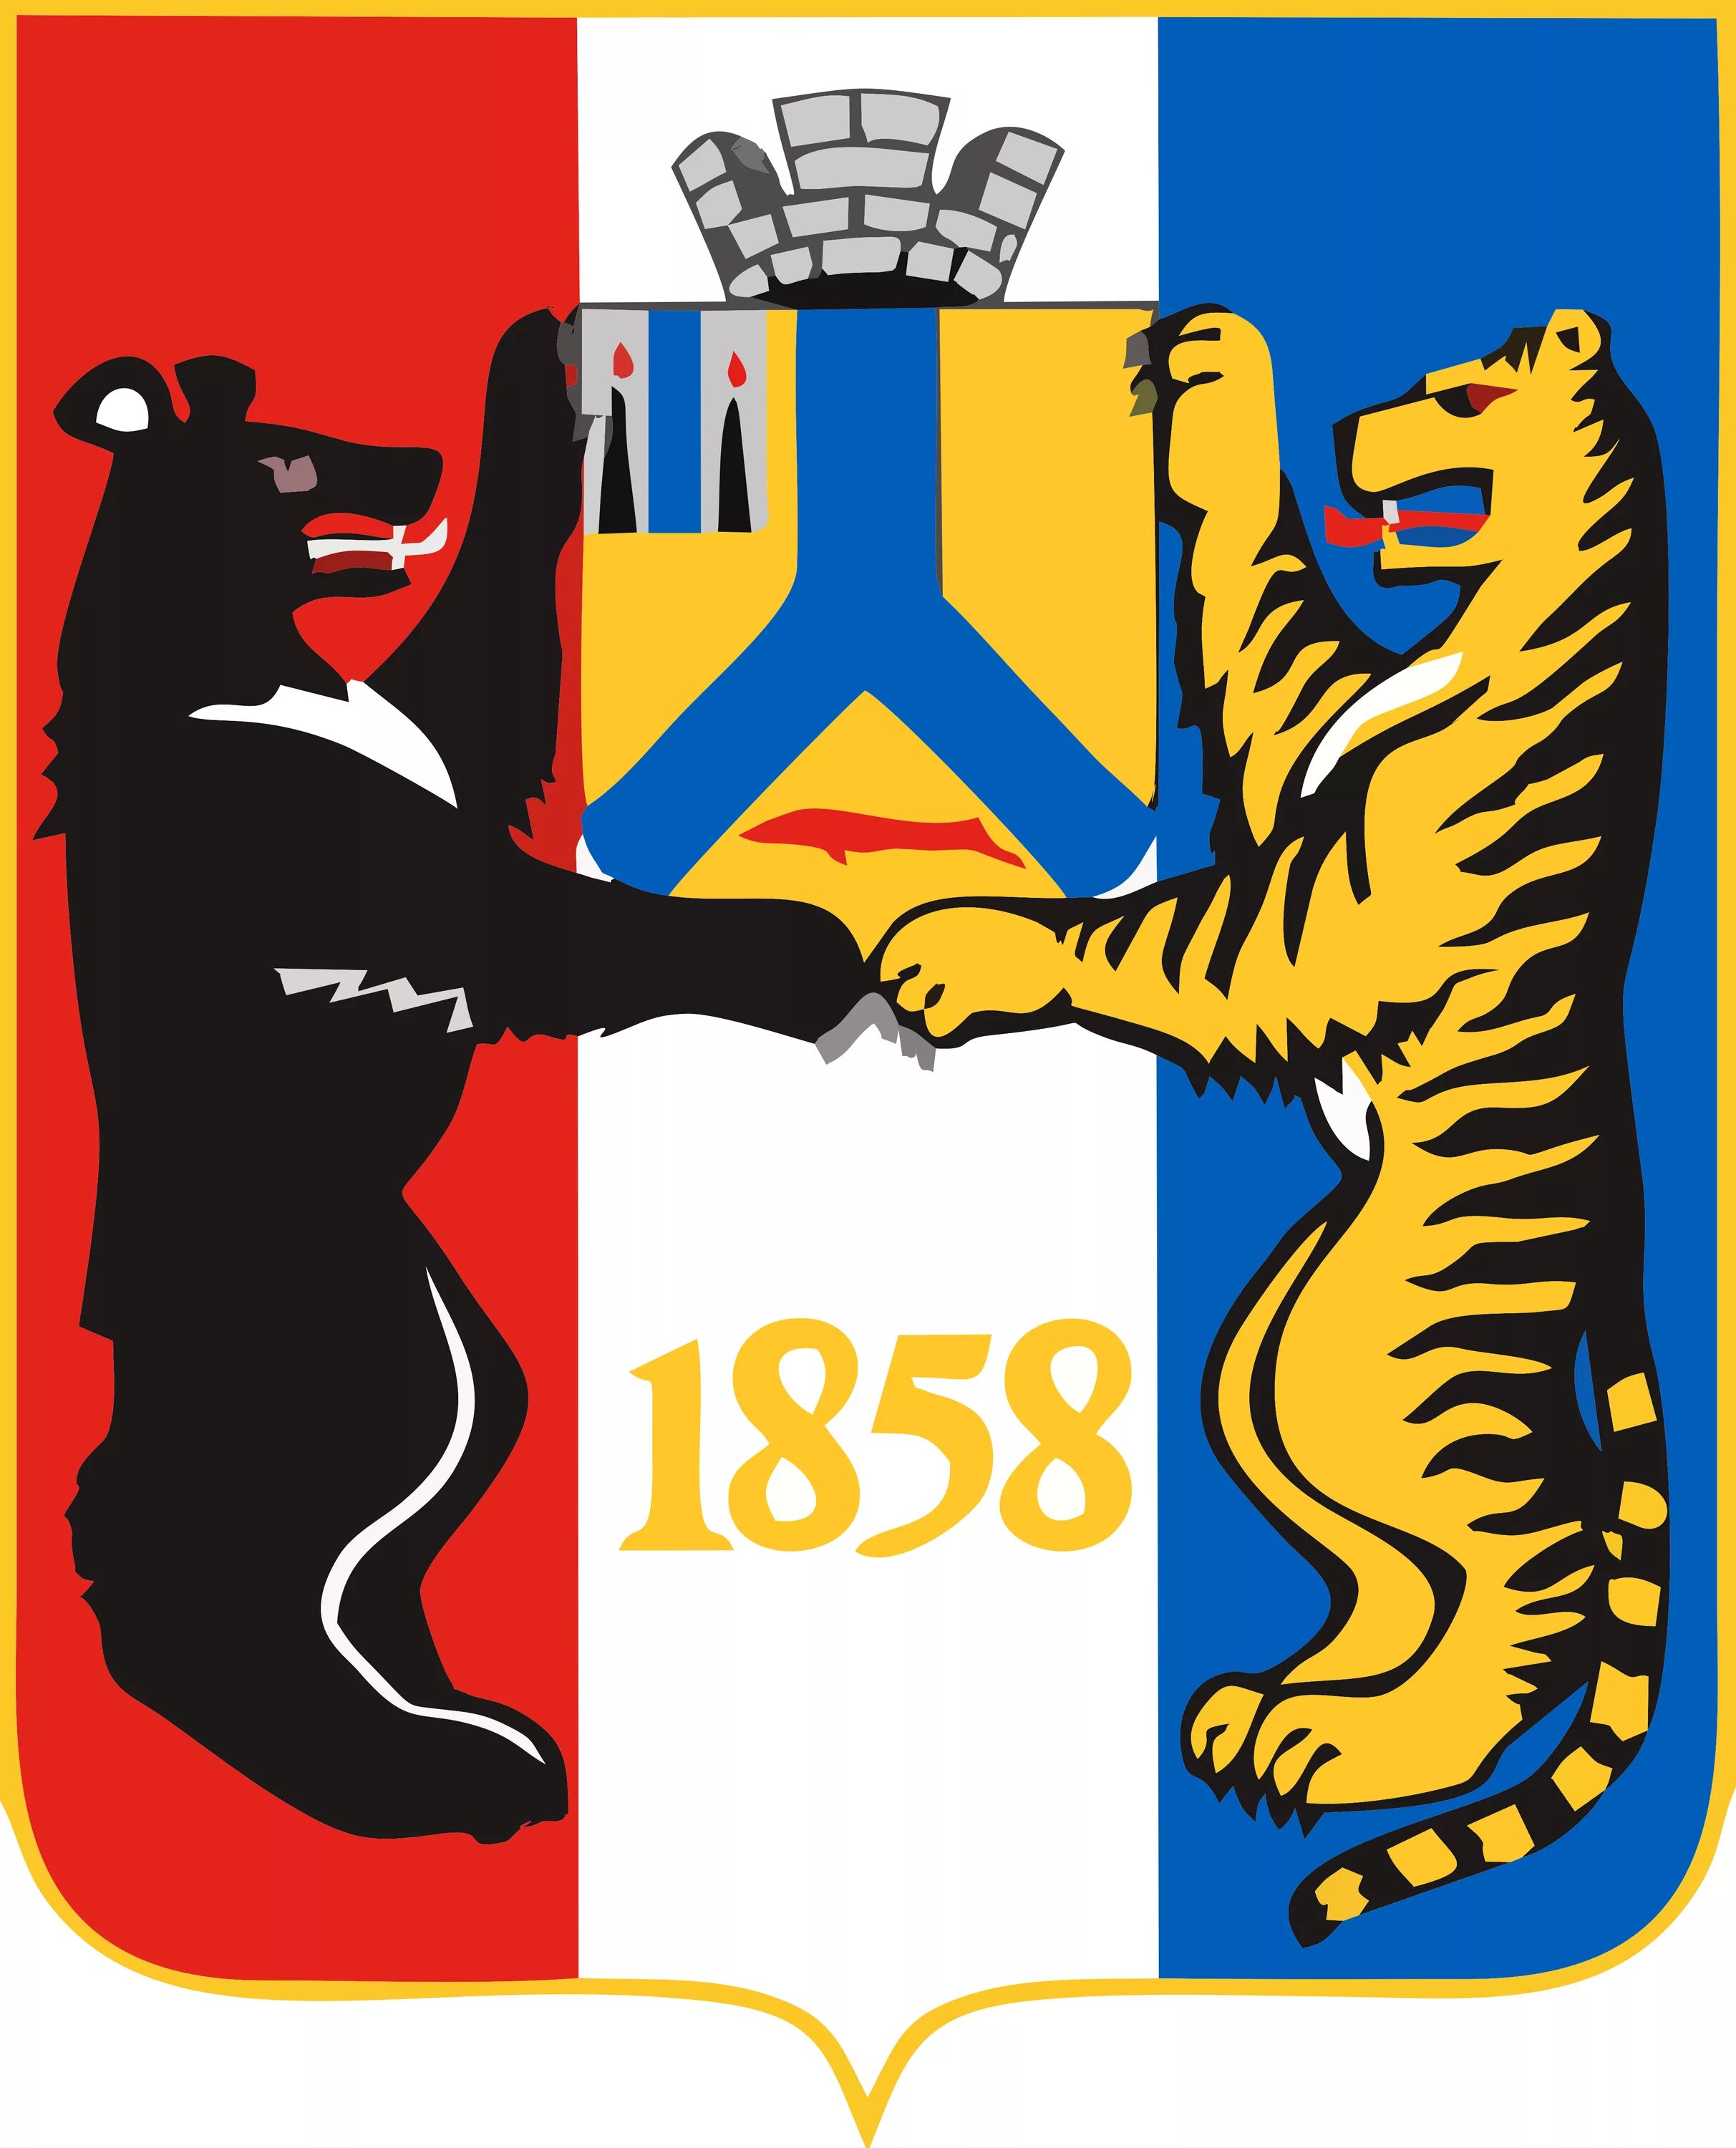 Второй герб Хабаровска. Живой символ Хабаровска. Флаг города Хабаровска. Символы герба Хабаровска. Герб 2 медведя